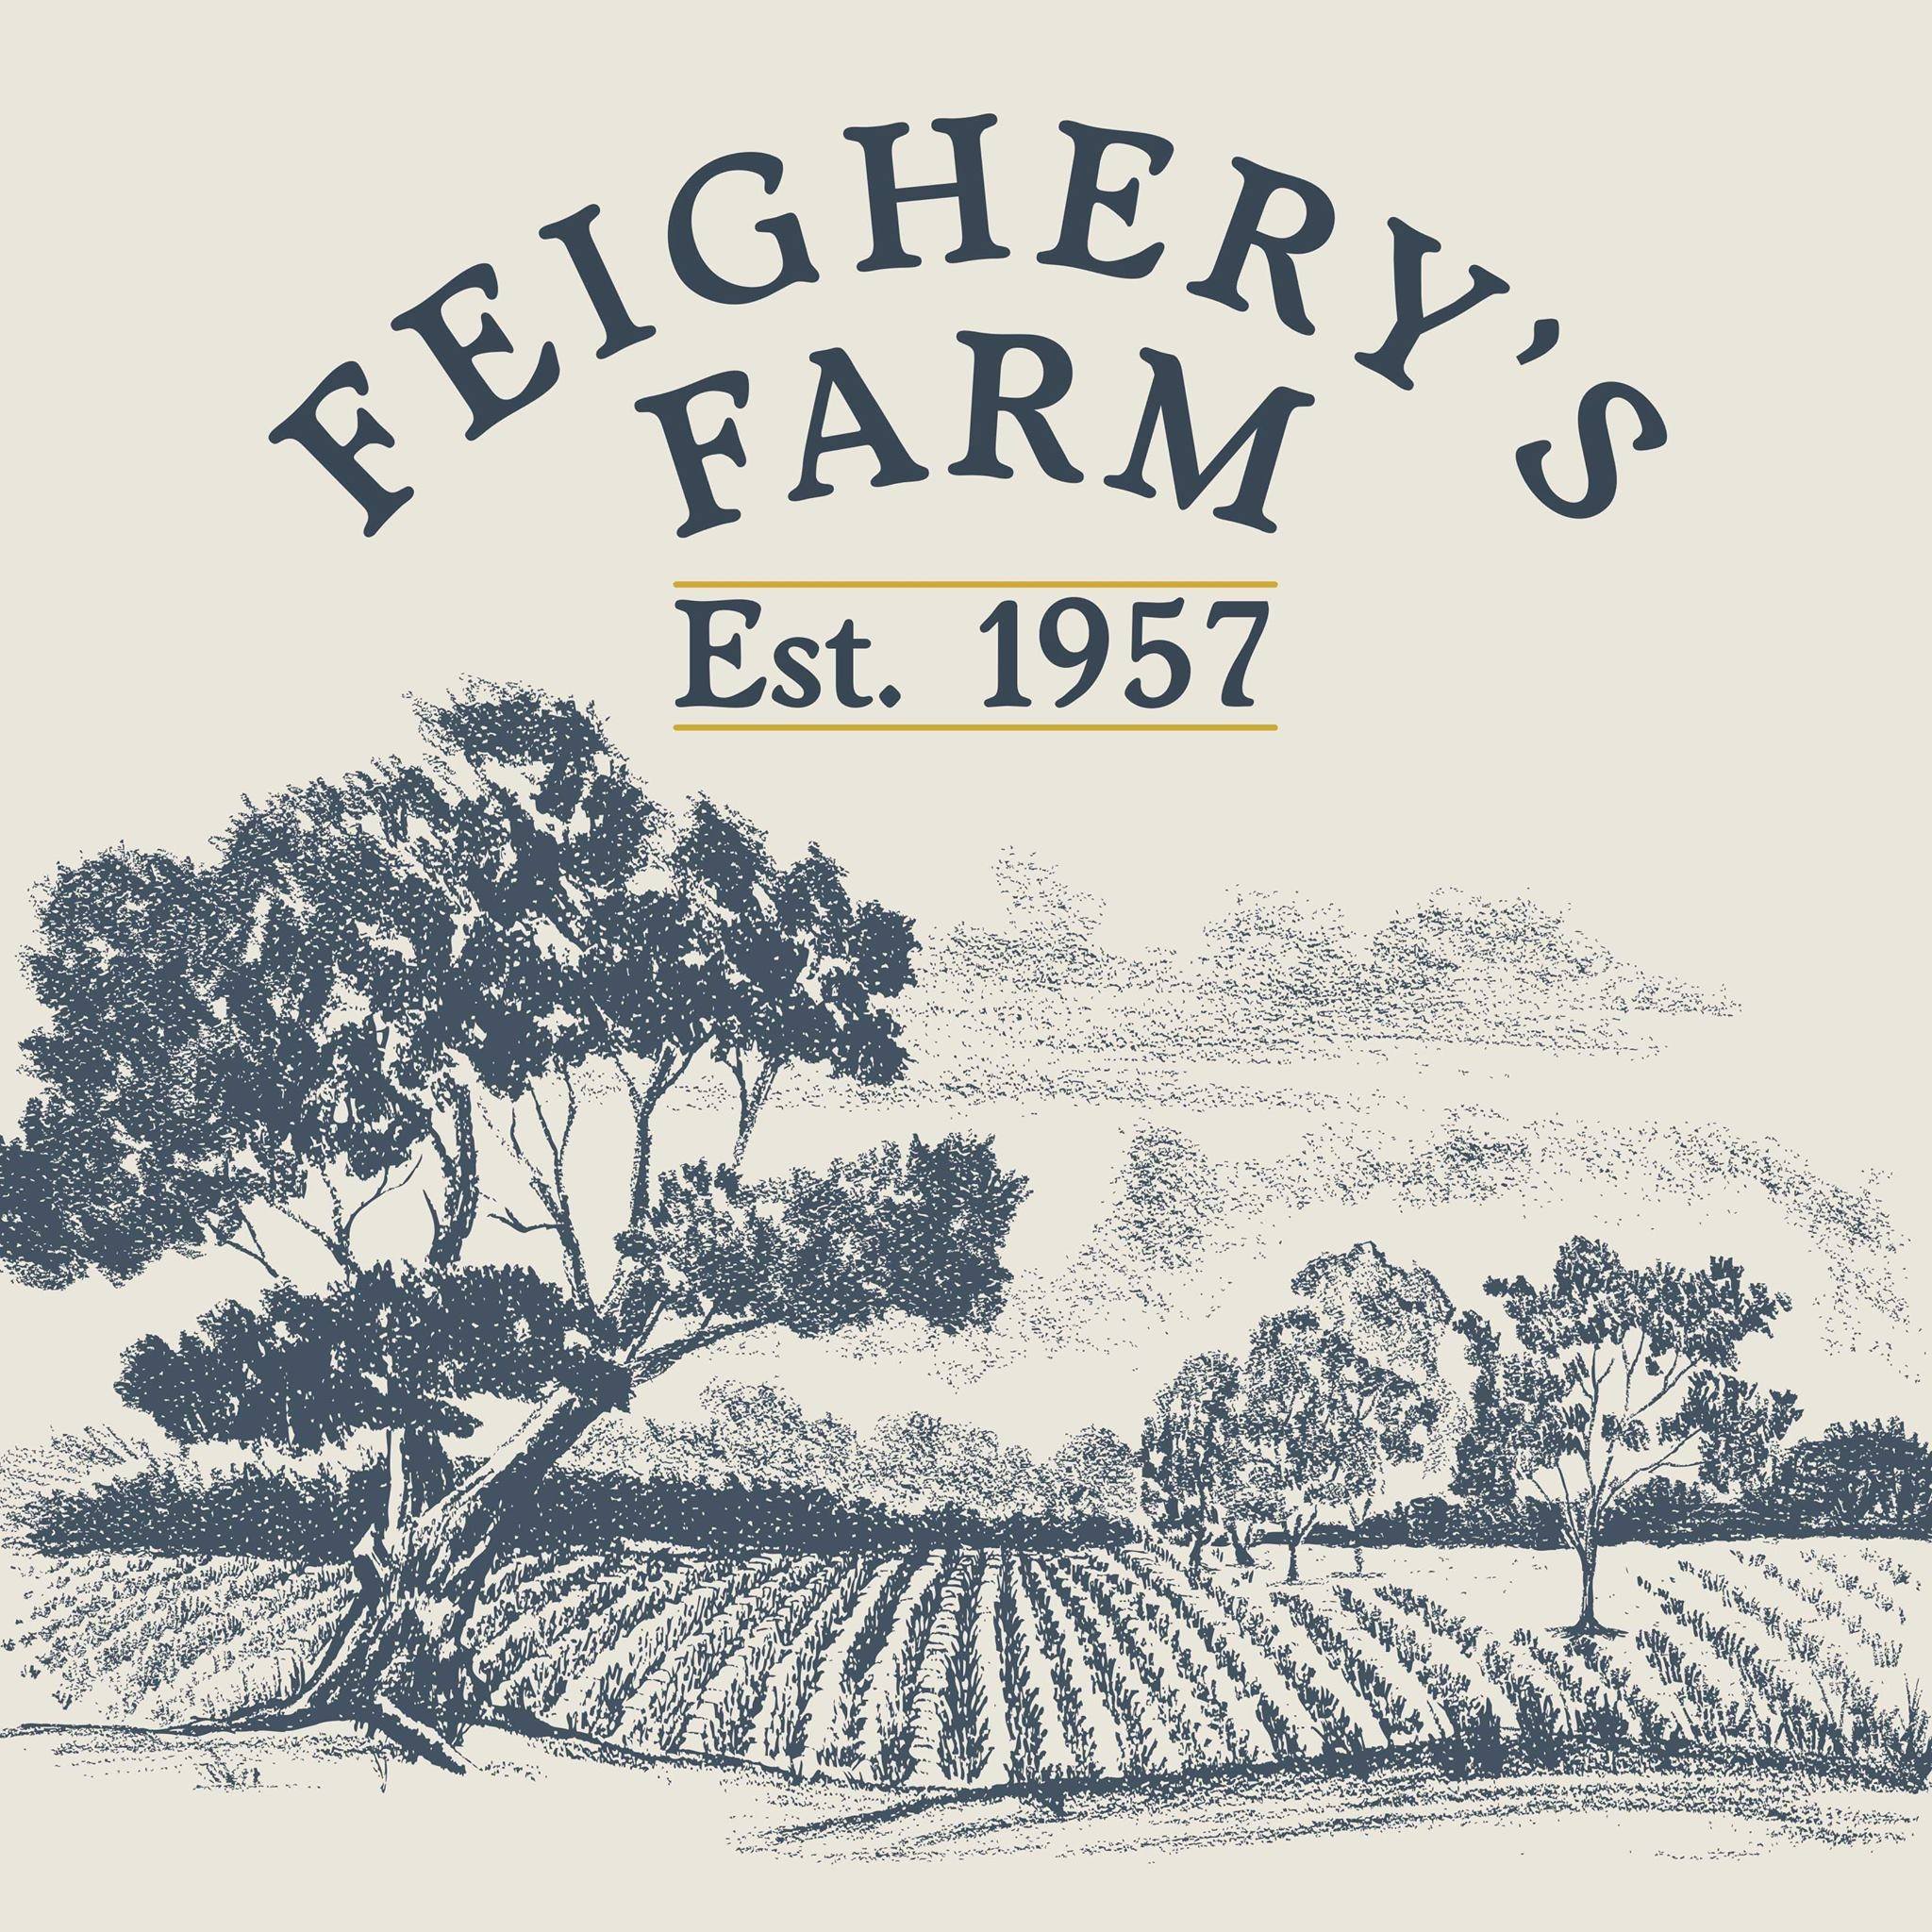 Feigherys Farm logo